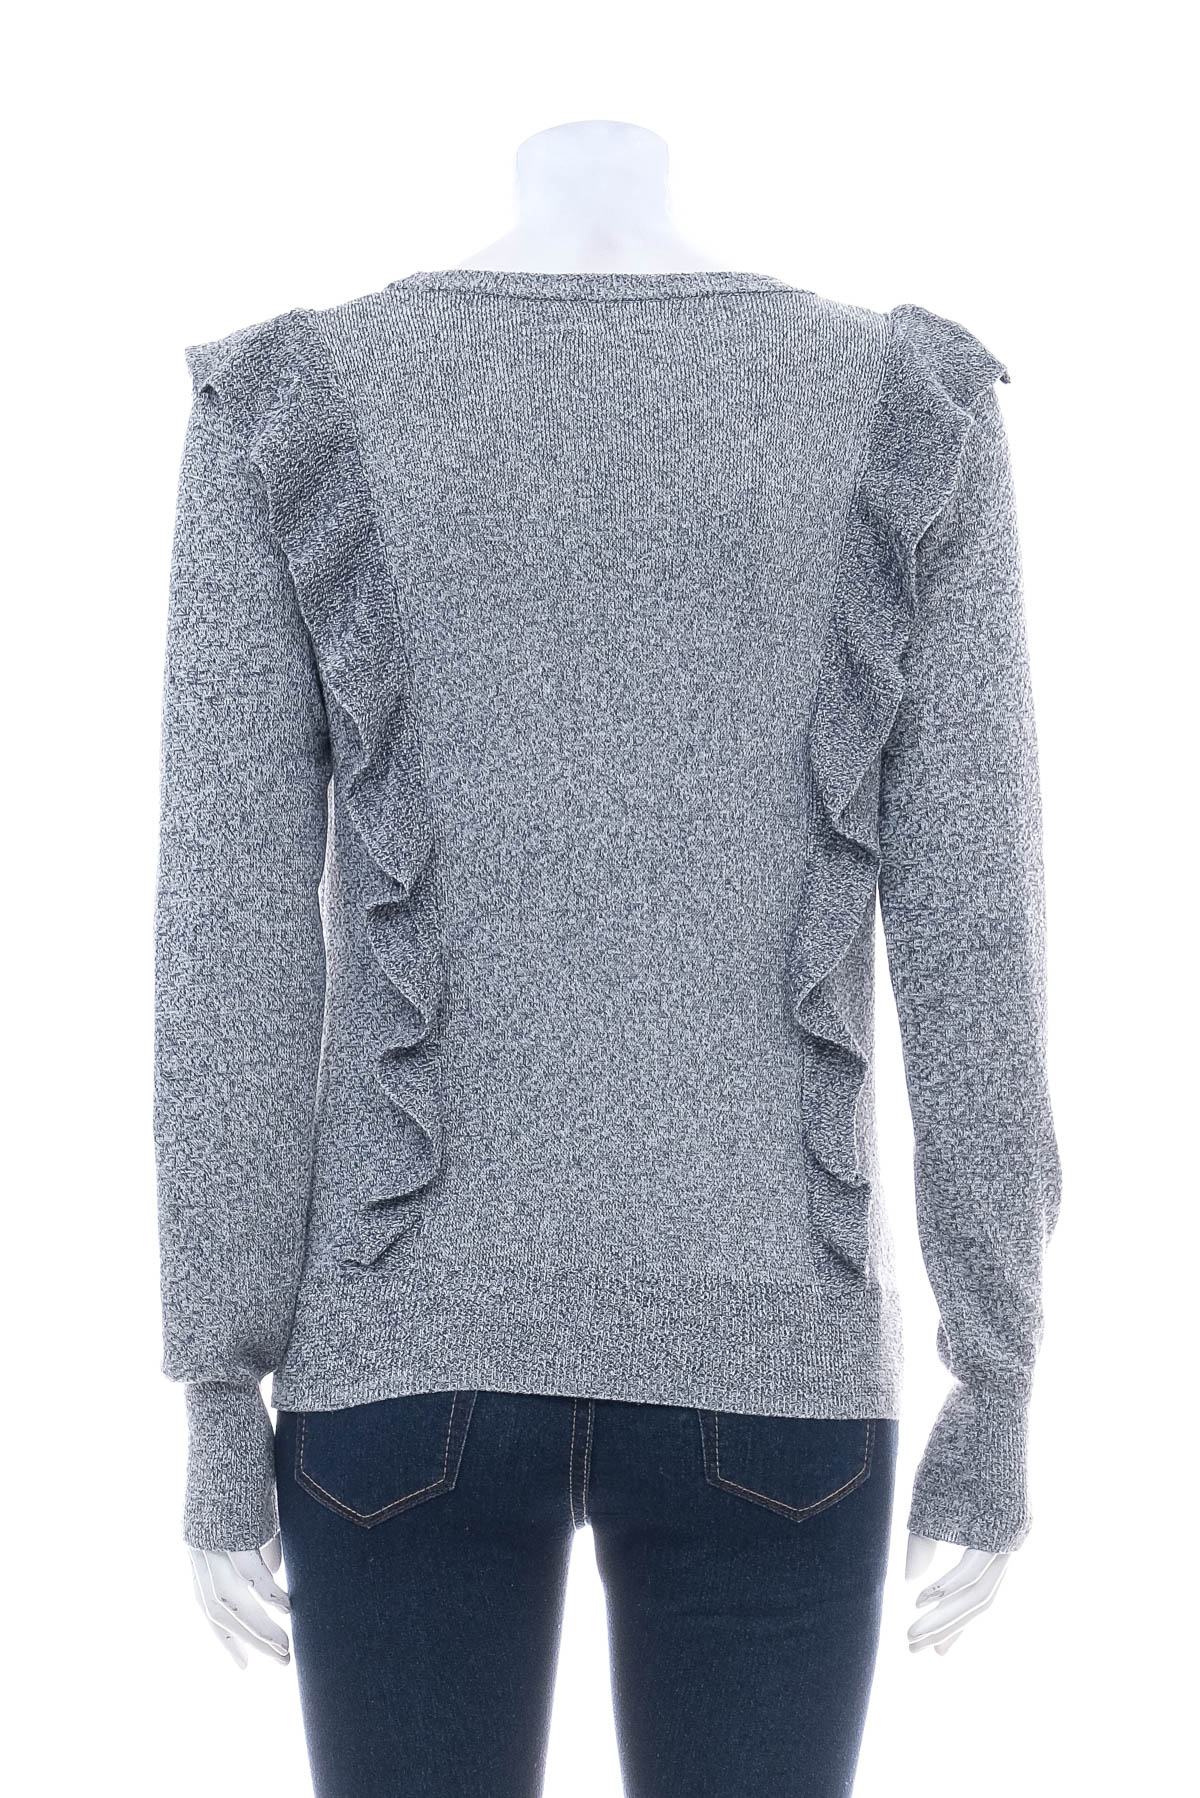 Women's sweater - Garcia Jeans - 1